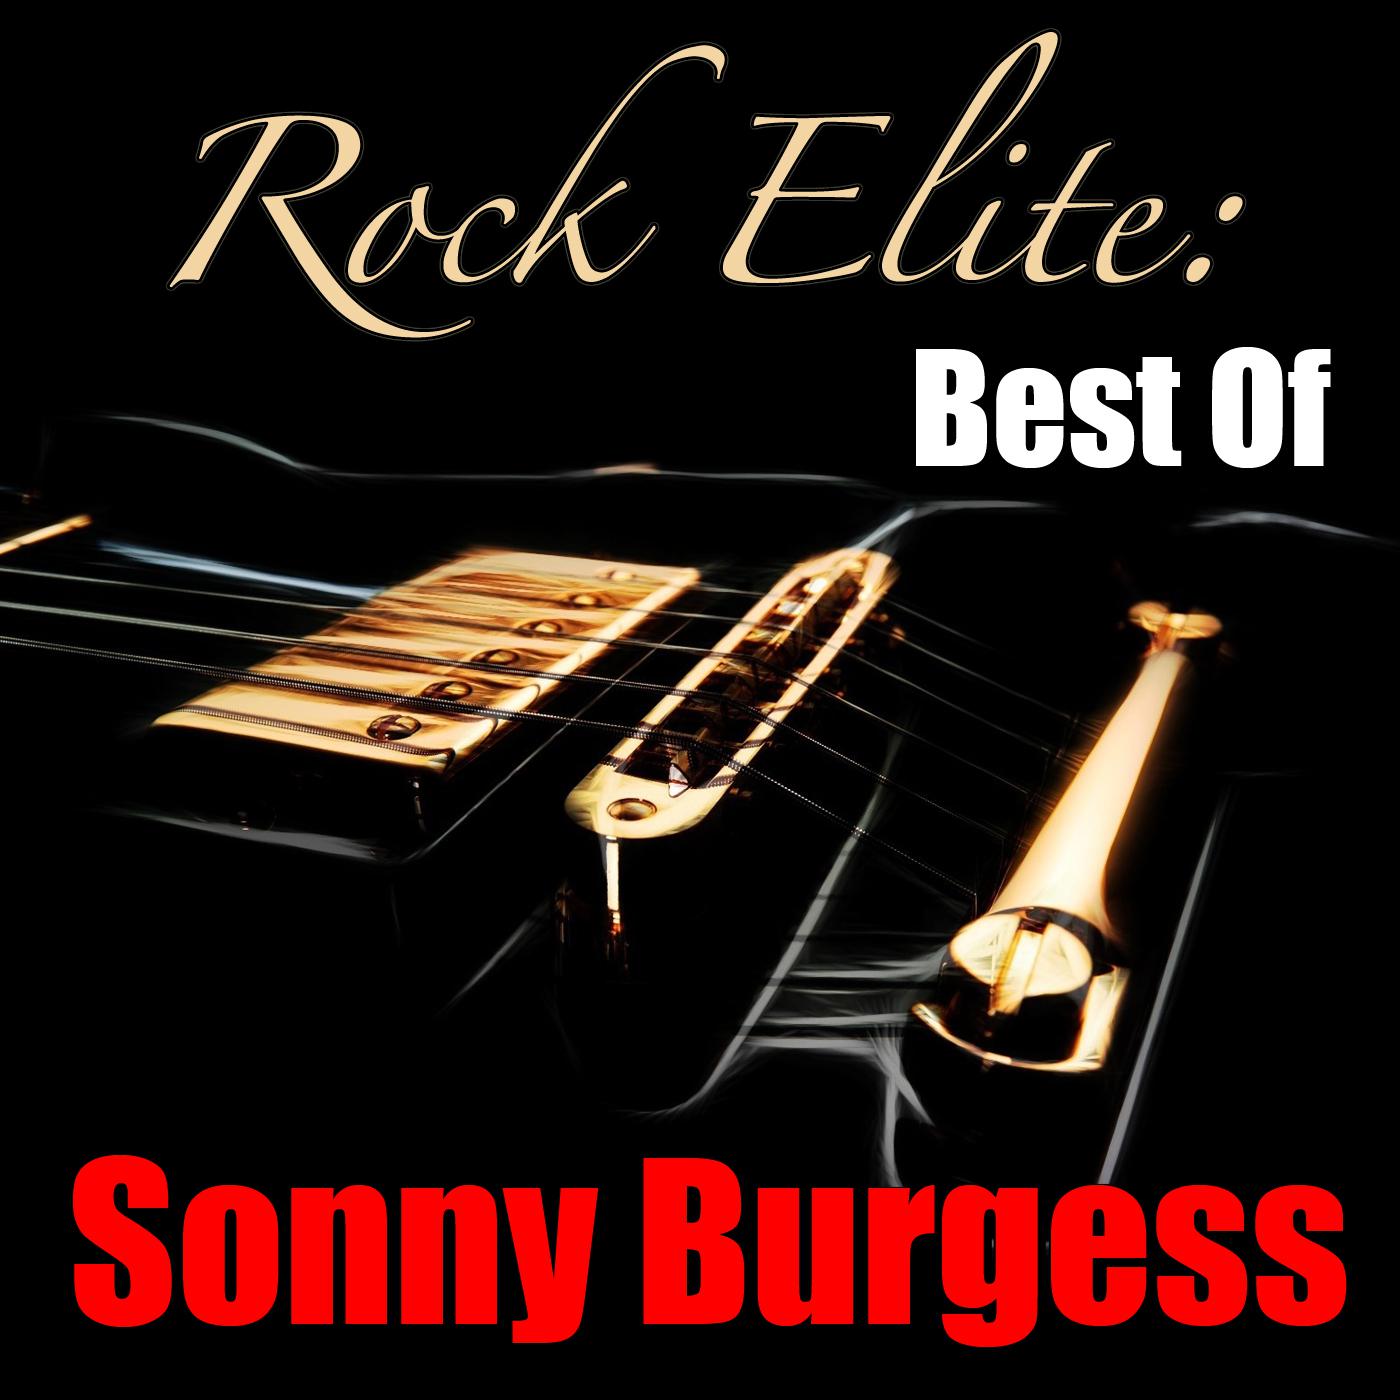 Rock Elite: Best Of Sonny Burgess